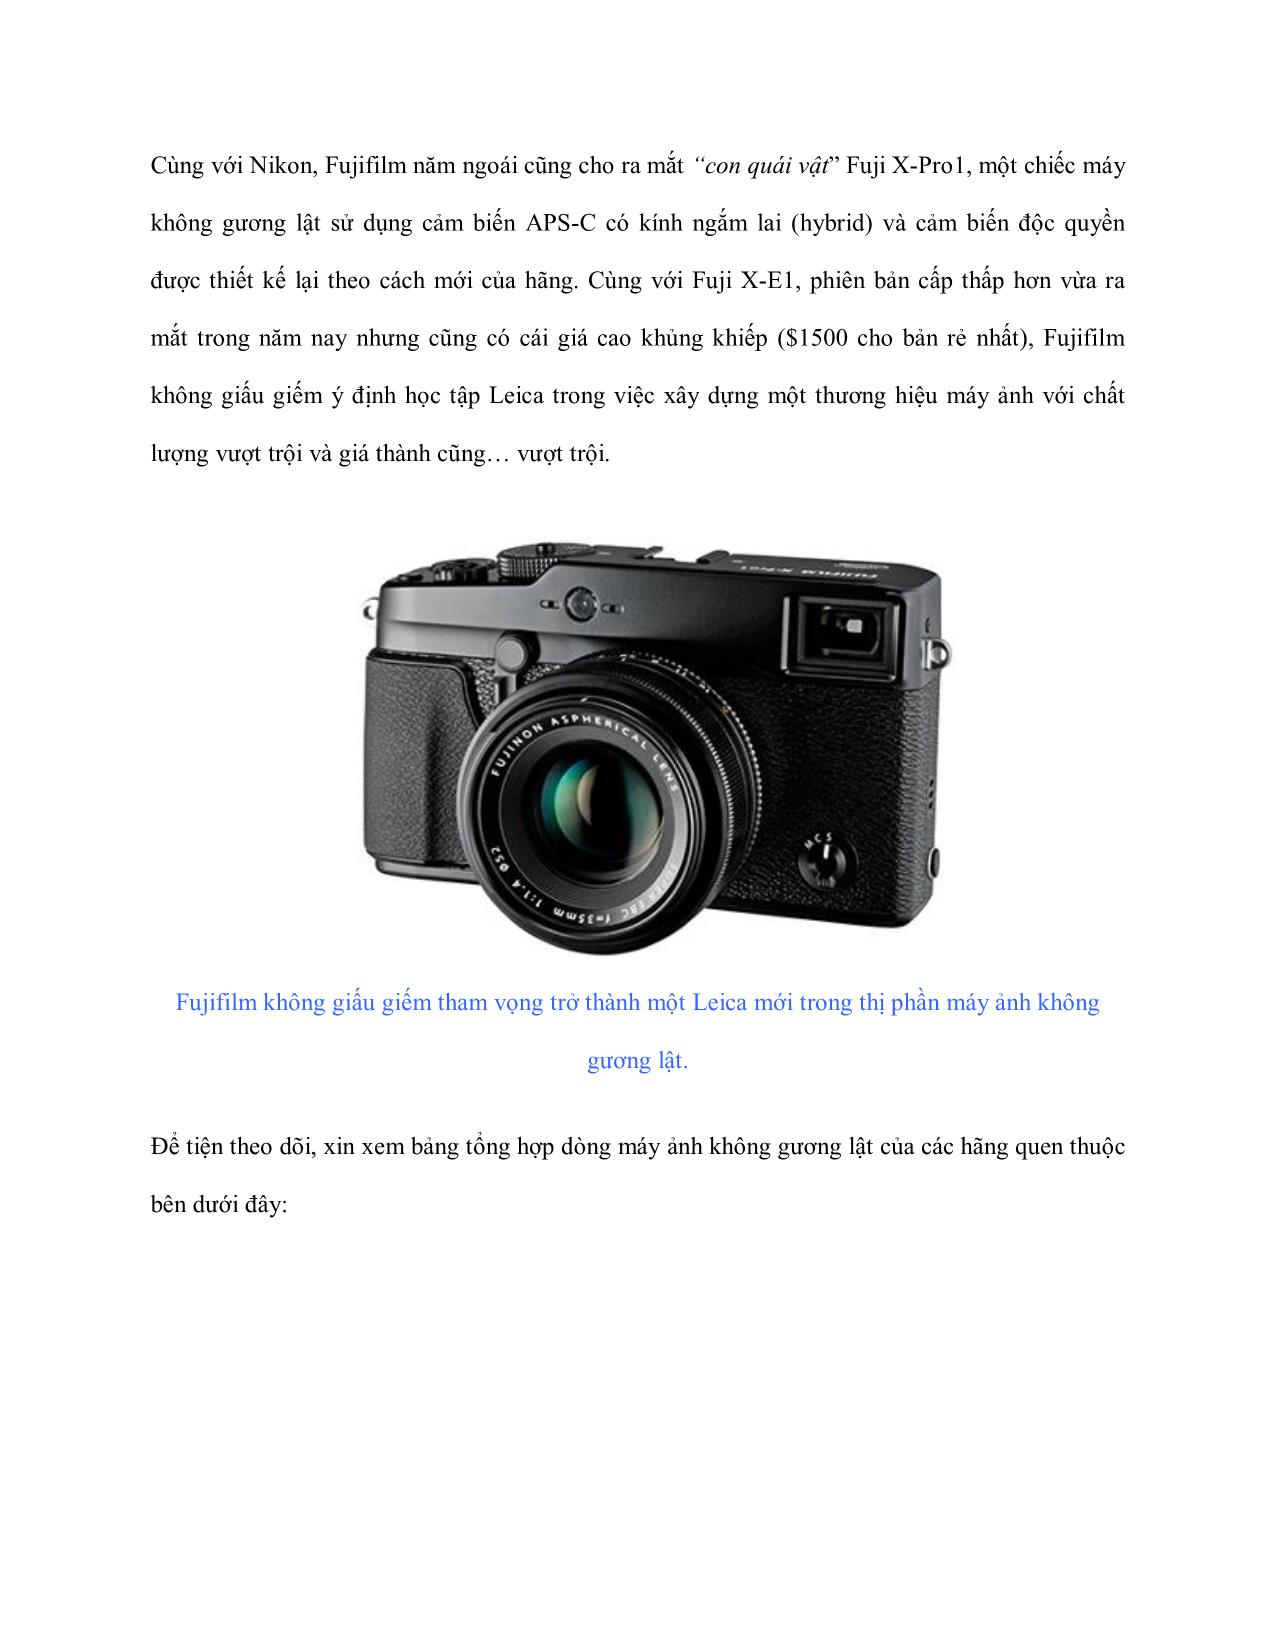 Máy ảnh không gương lật - Những điều cần biết (Phần I) trang 9